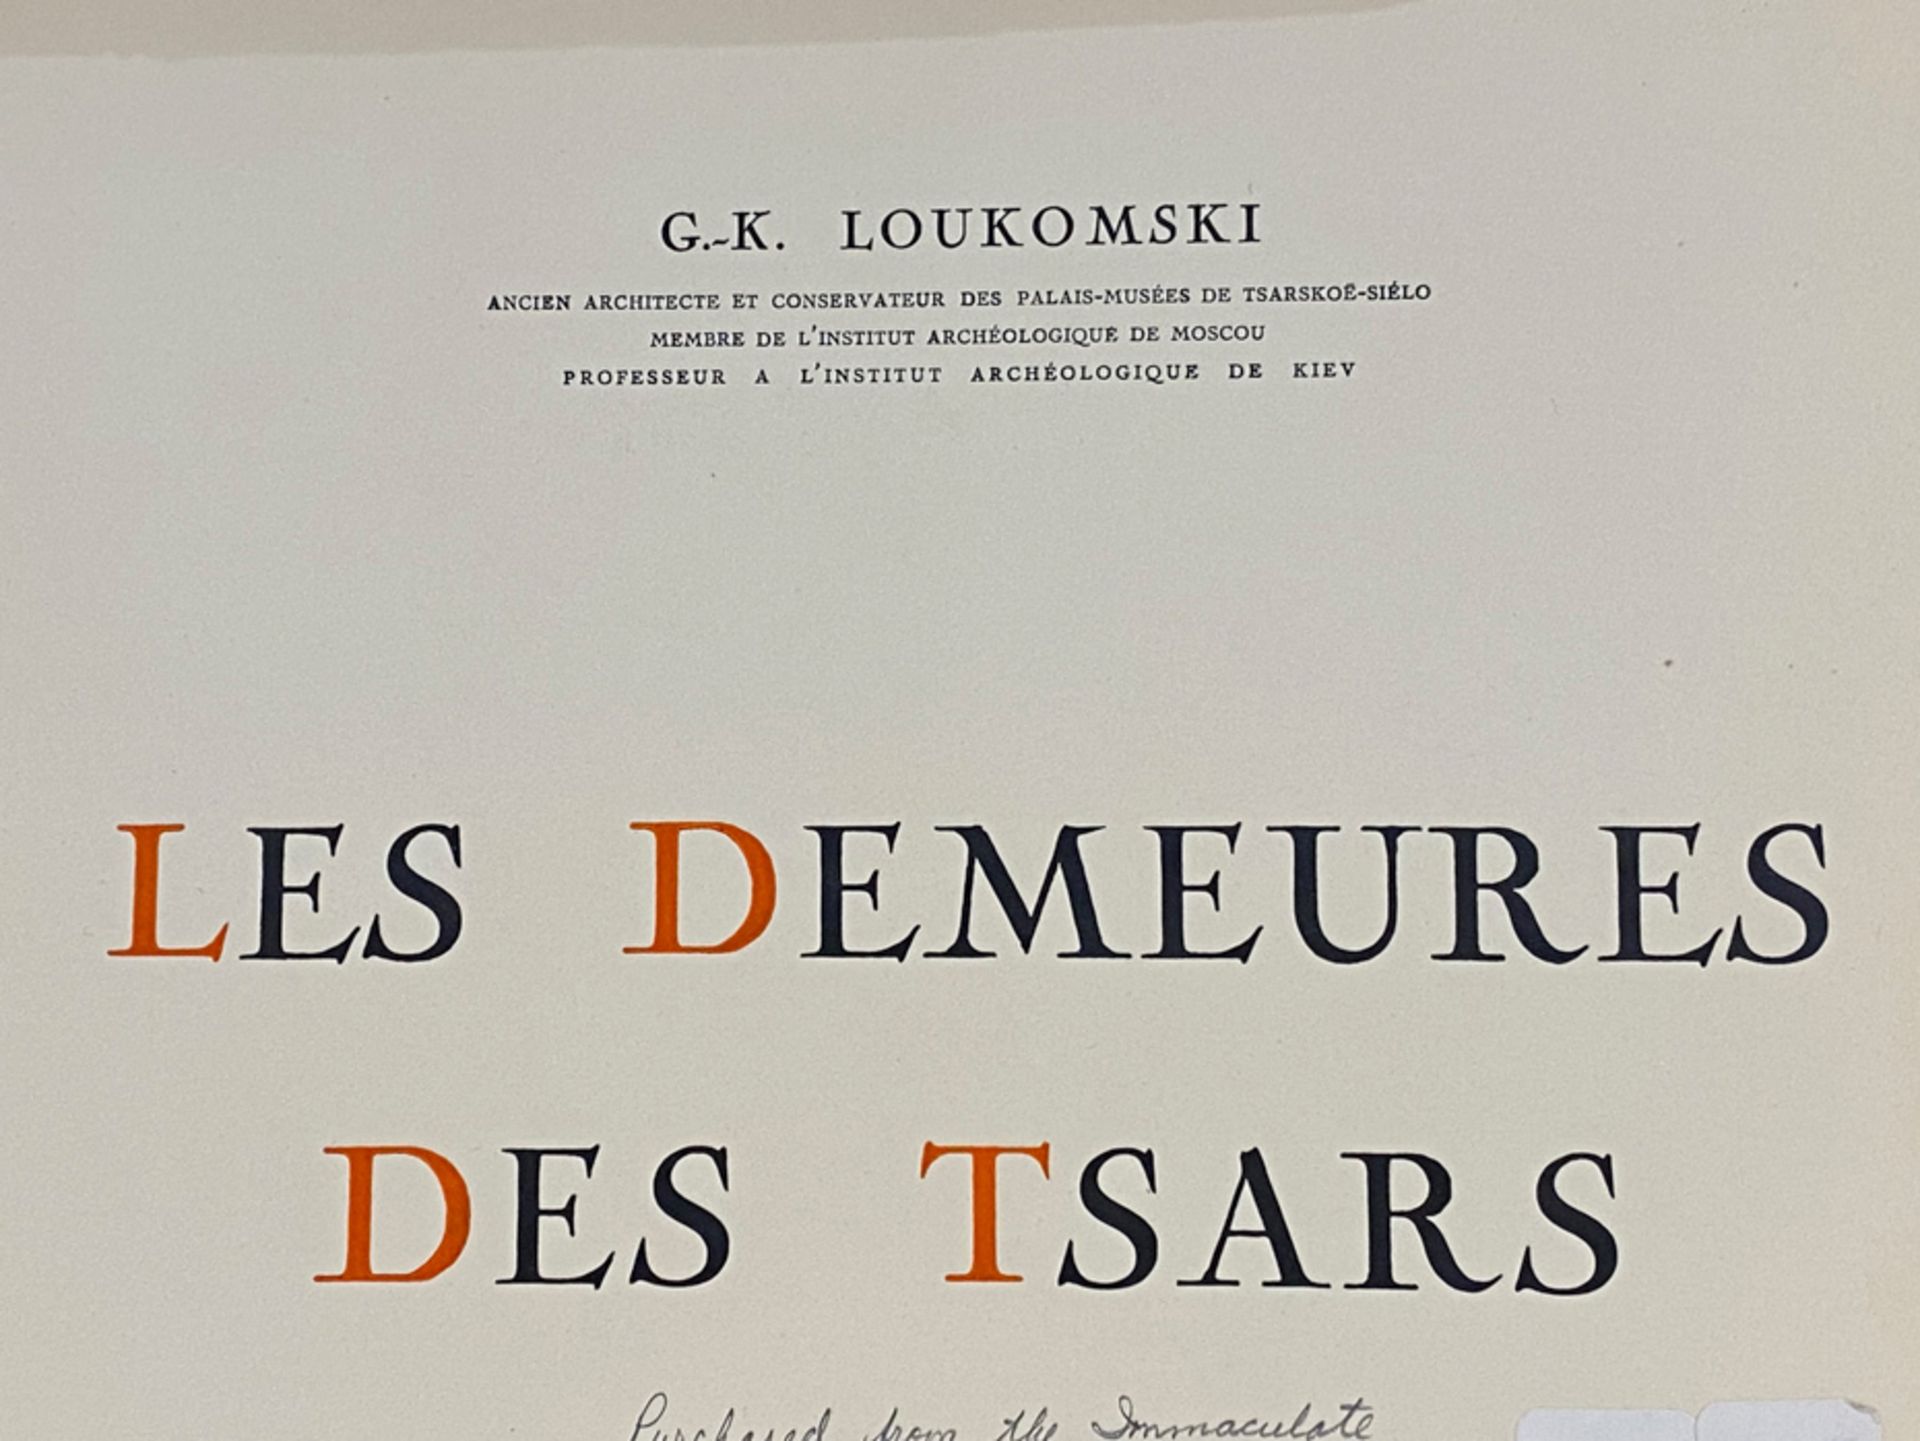 LOUKOMSKI, G.K., LES DEMEURES DES TSARS, PARIS 1929 - Image 10 of 17